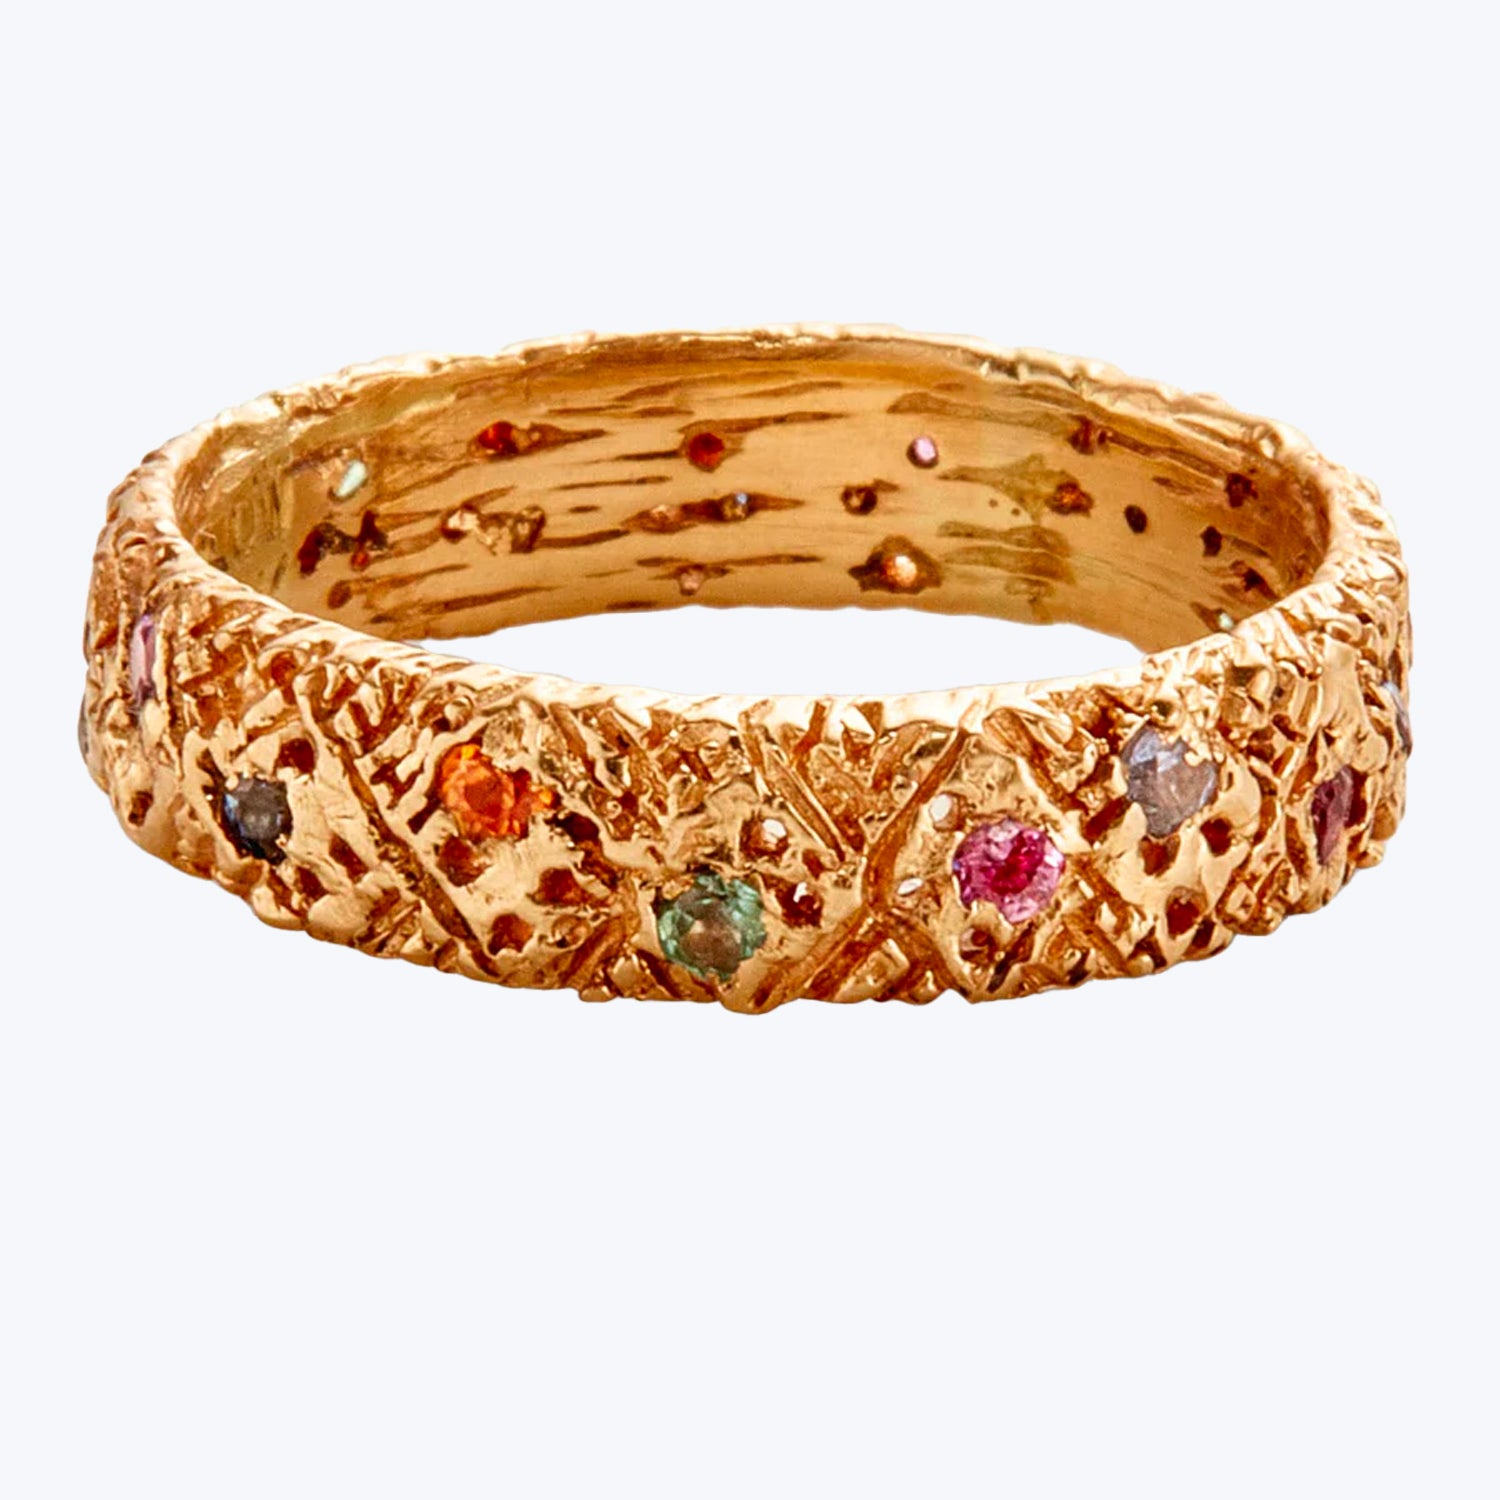 Elegant golden bracelet with textured surface and playful gemstones